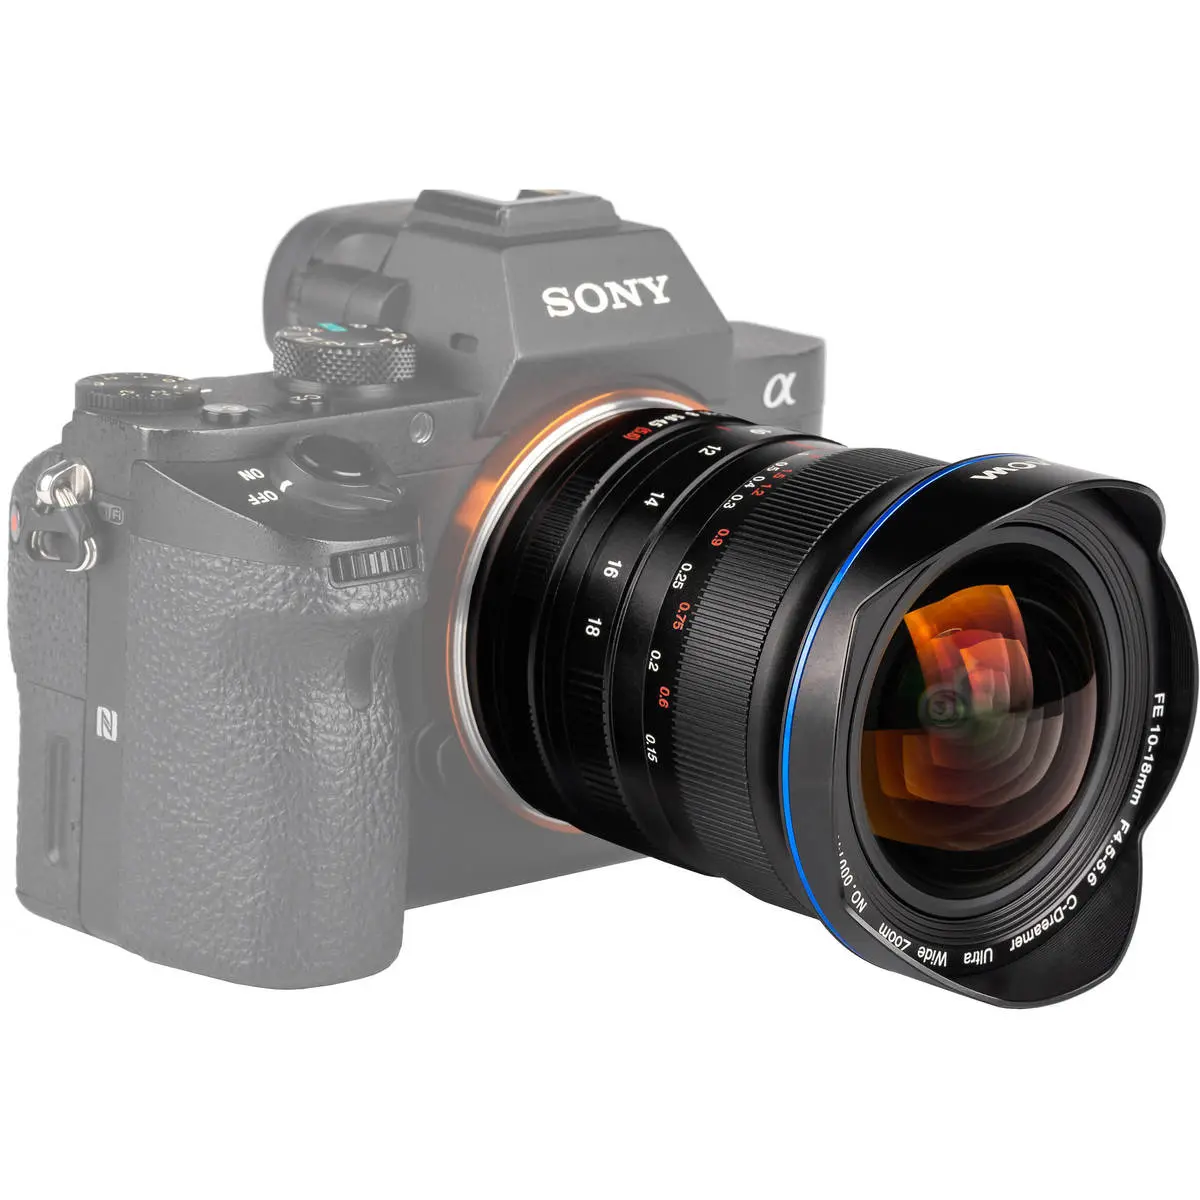 6. LAOWA Lens 10-18mm F/4.5-5.6 FE Zoom (Sony FE)